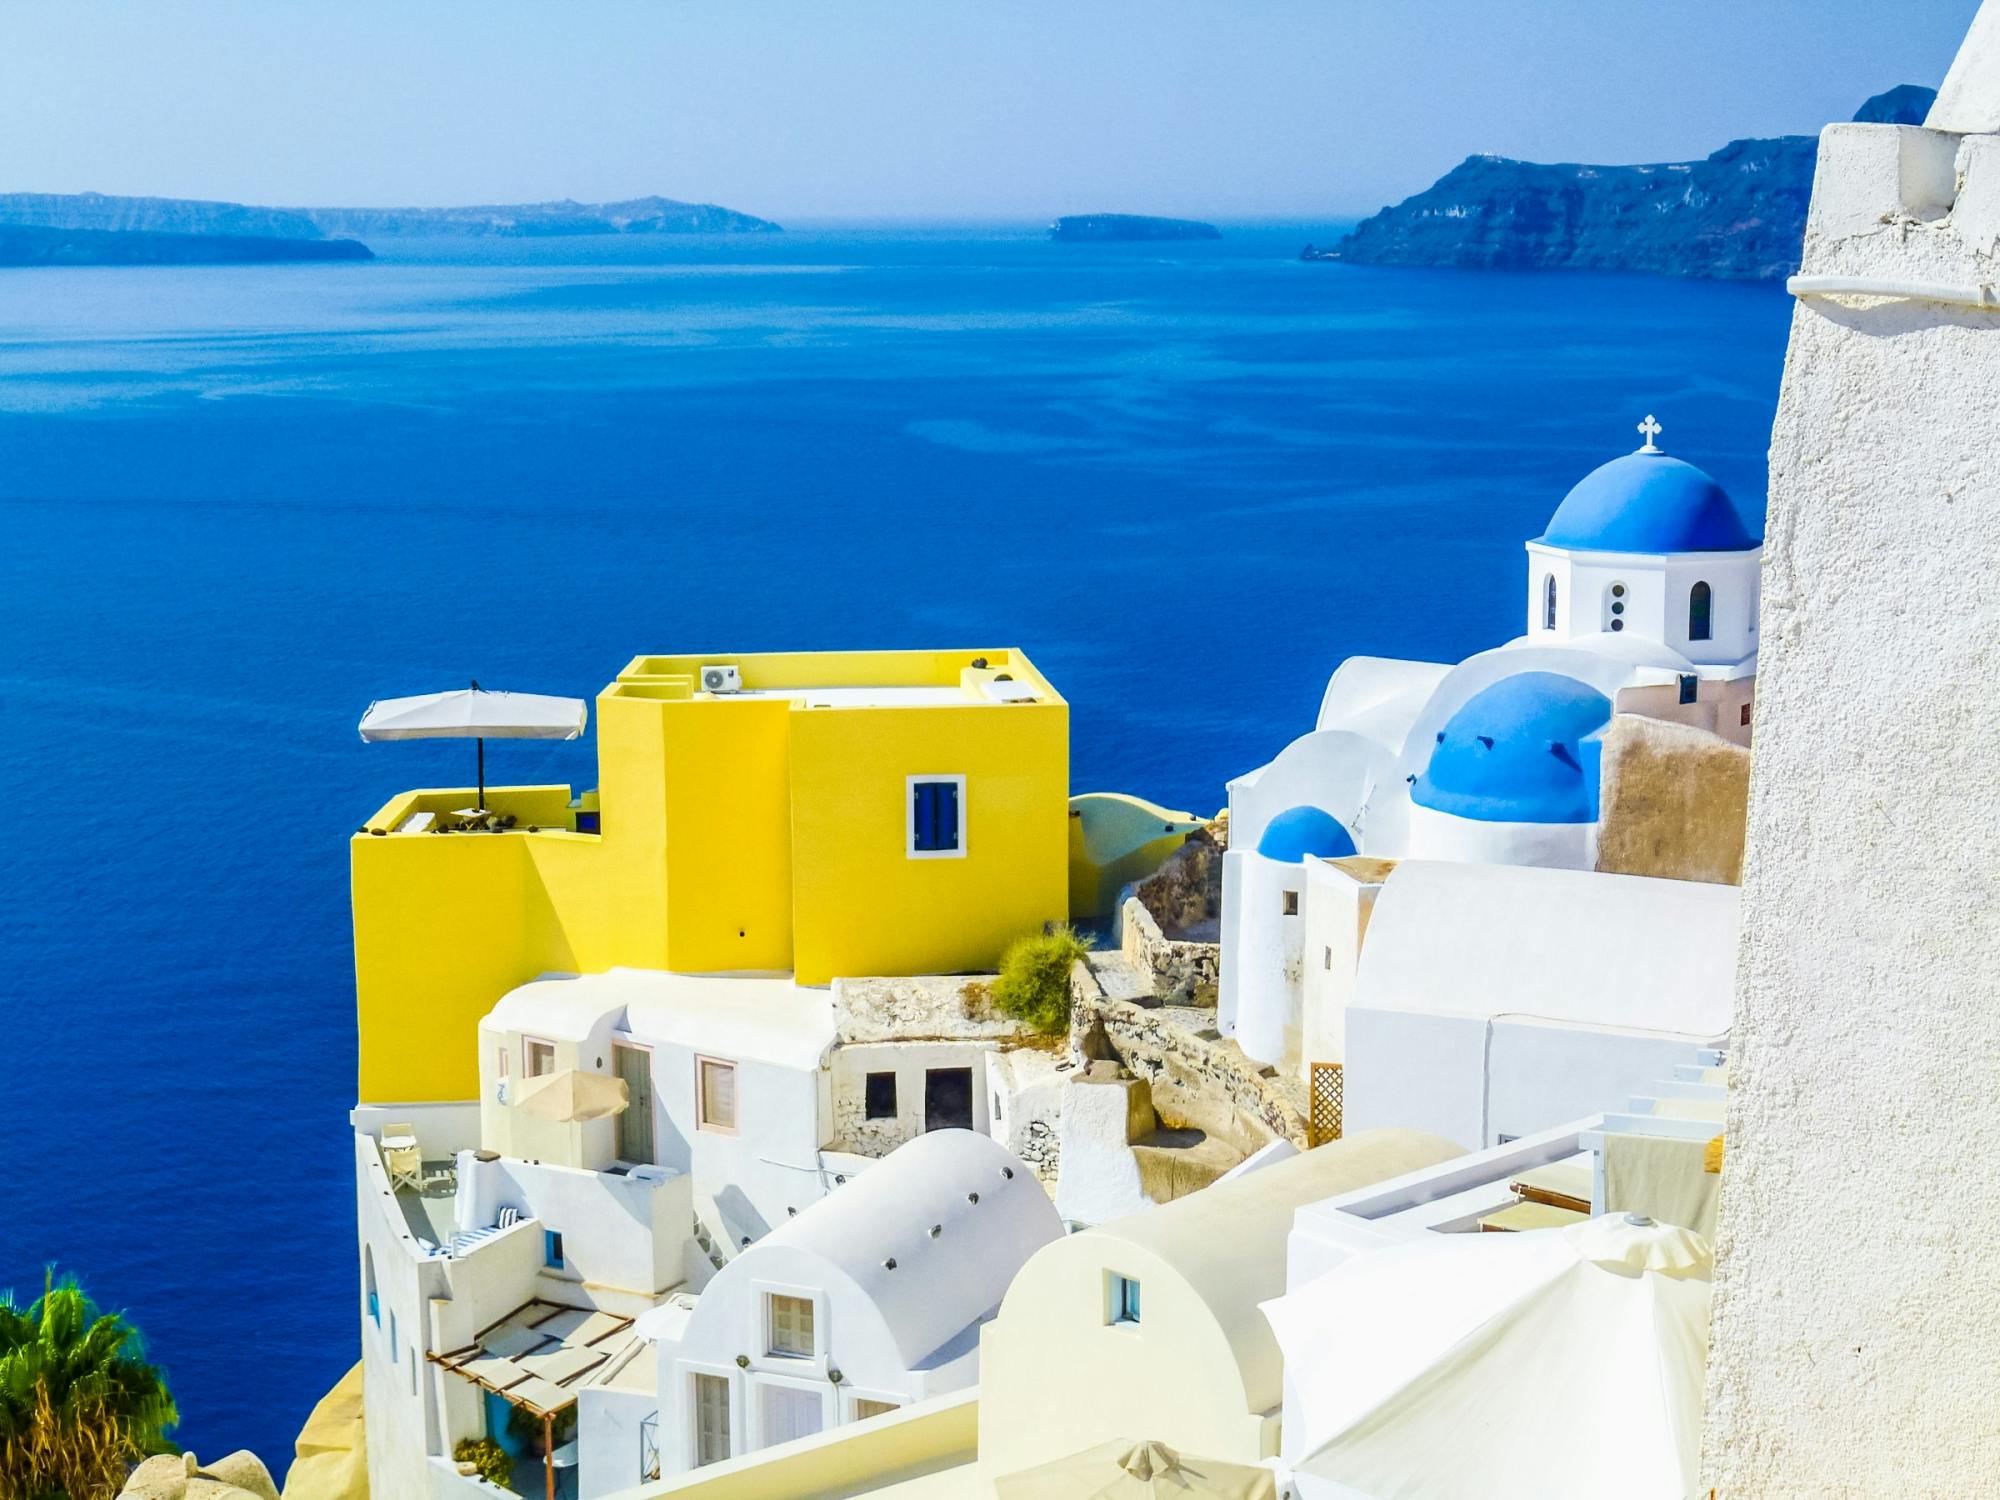 Ganztägige Santorini-Tour ab Athen mit Fähre und Flug